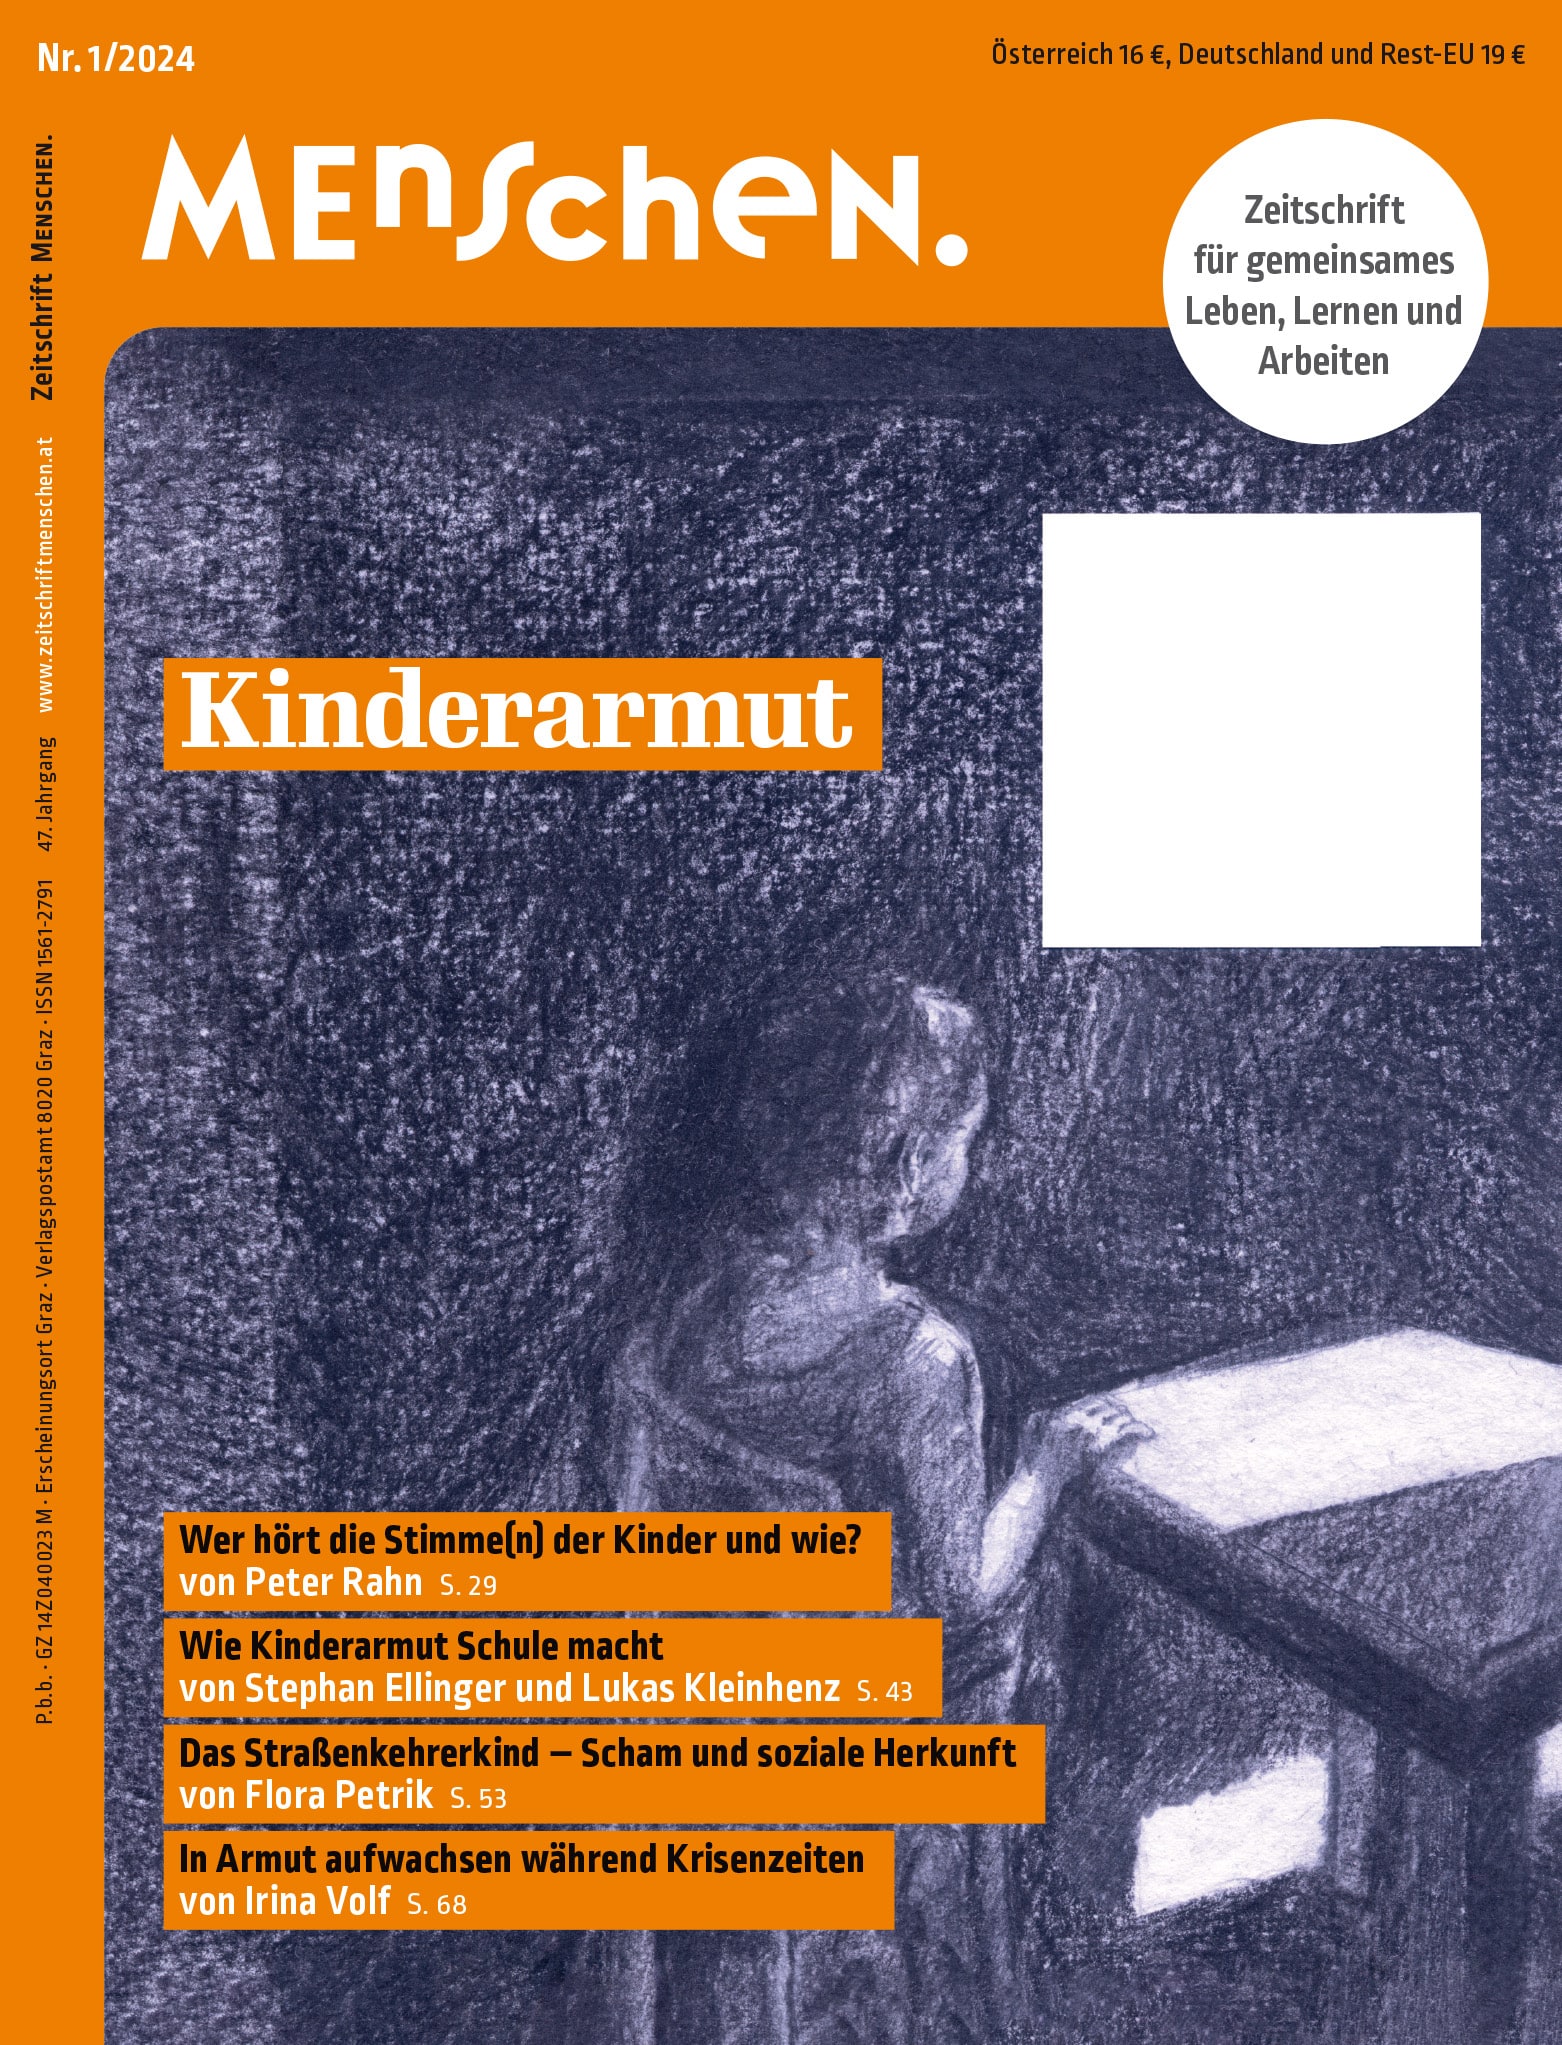 Titelbild der Zeitschrift BEHINDERTE MENSCHEN, Ausgabe 1/2024 "Kinderarmut"